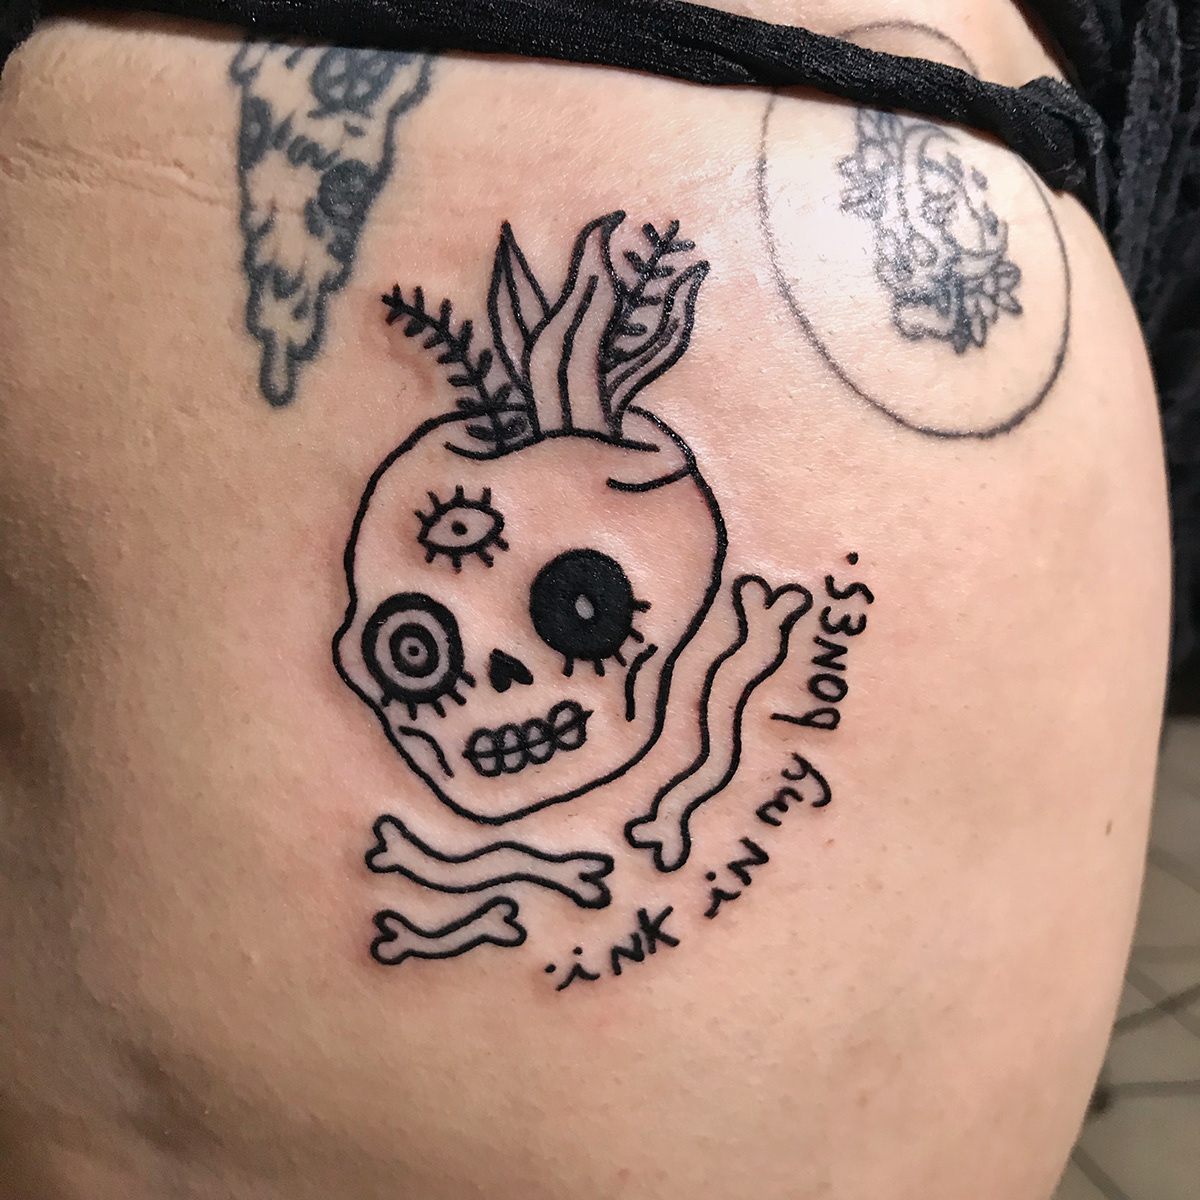 El Salvador tattoo tattoo design heart women skull vampire